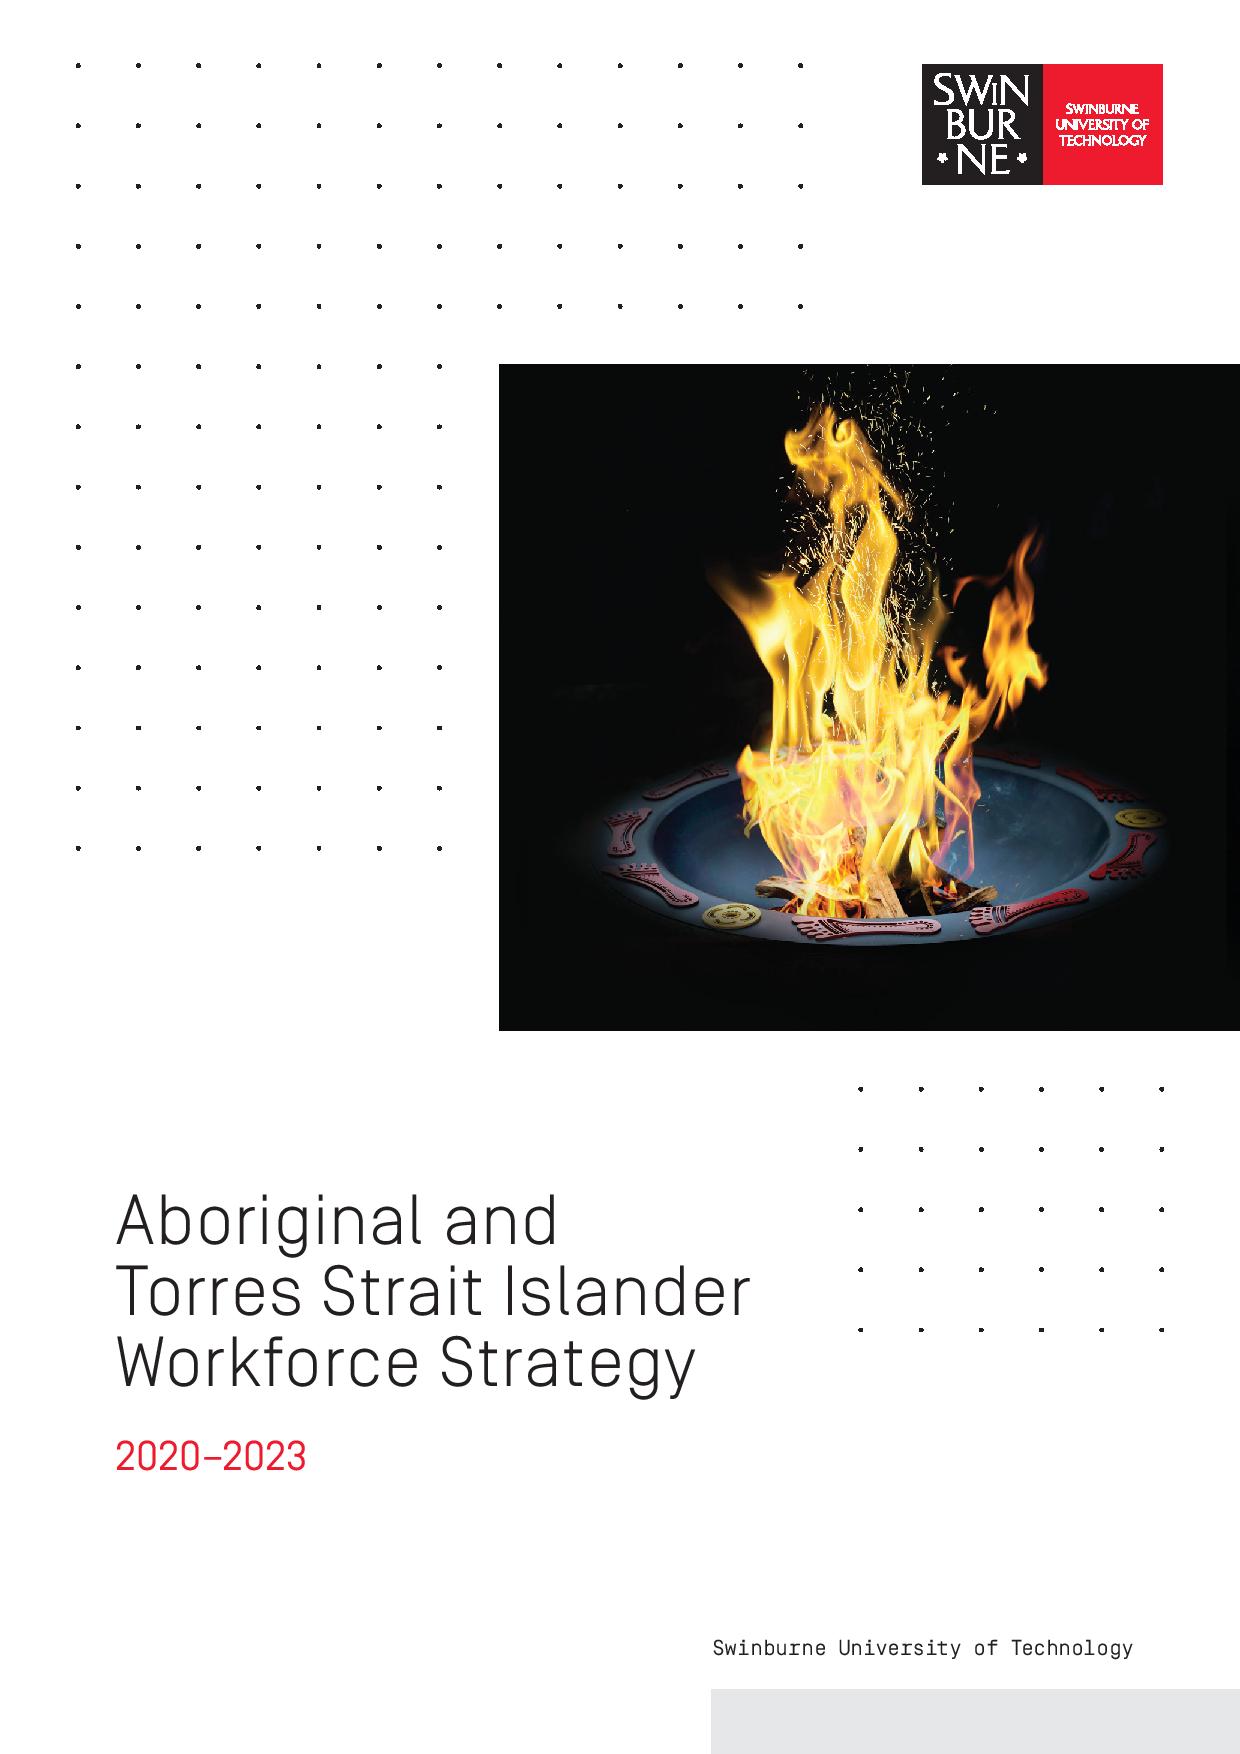 Aboriginal and Torres Strait Islander Workforce Strategy 2020-2023